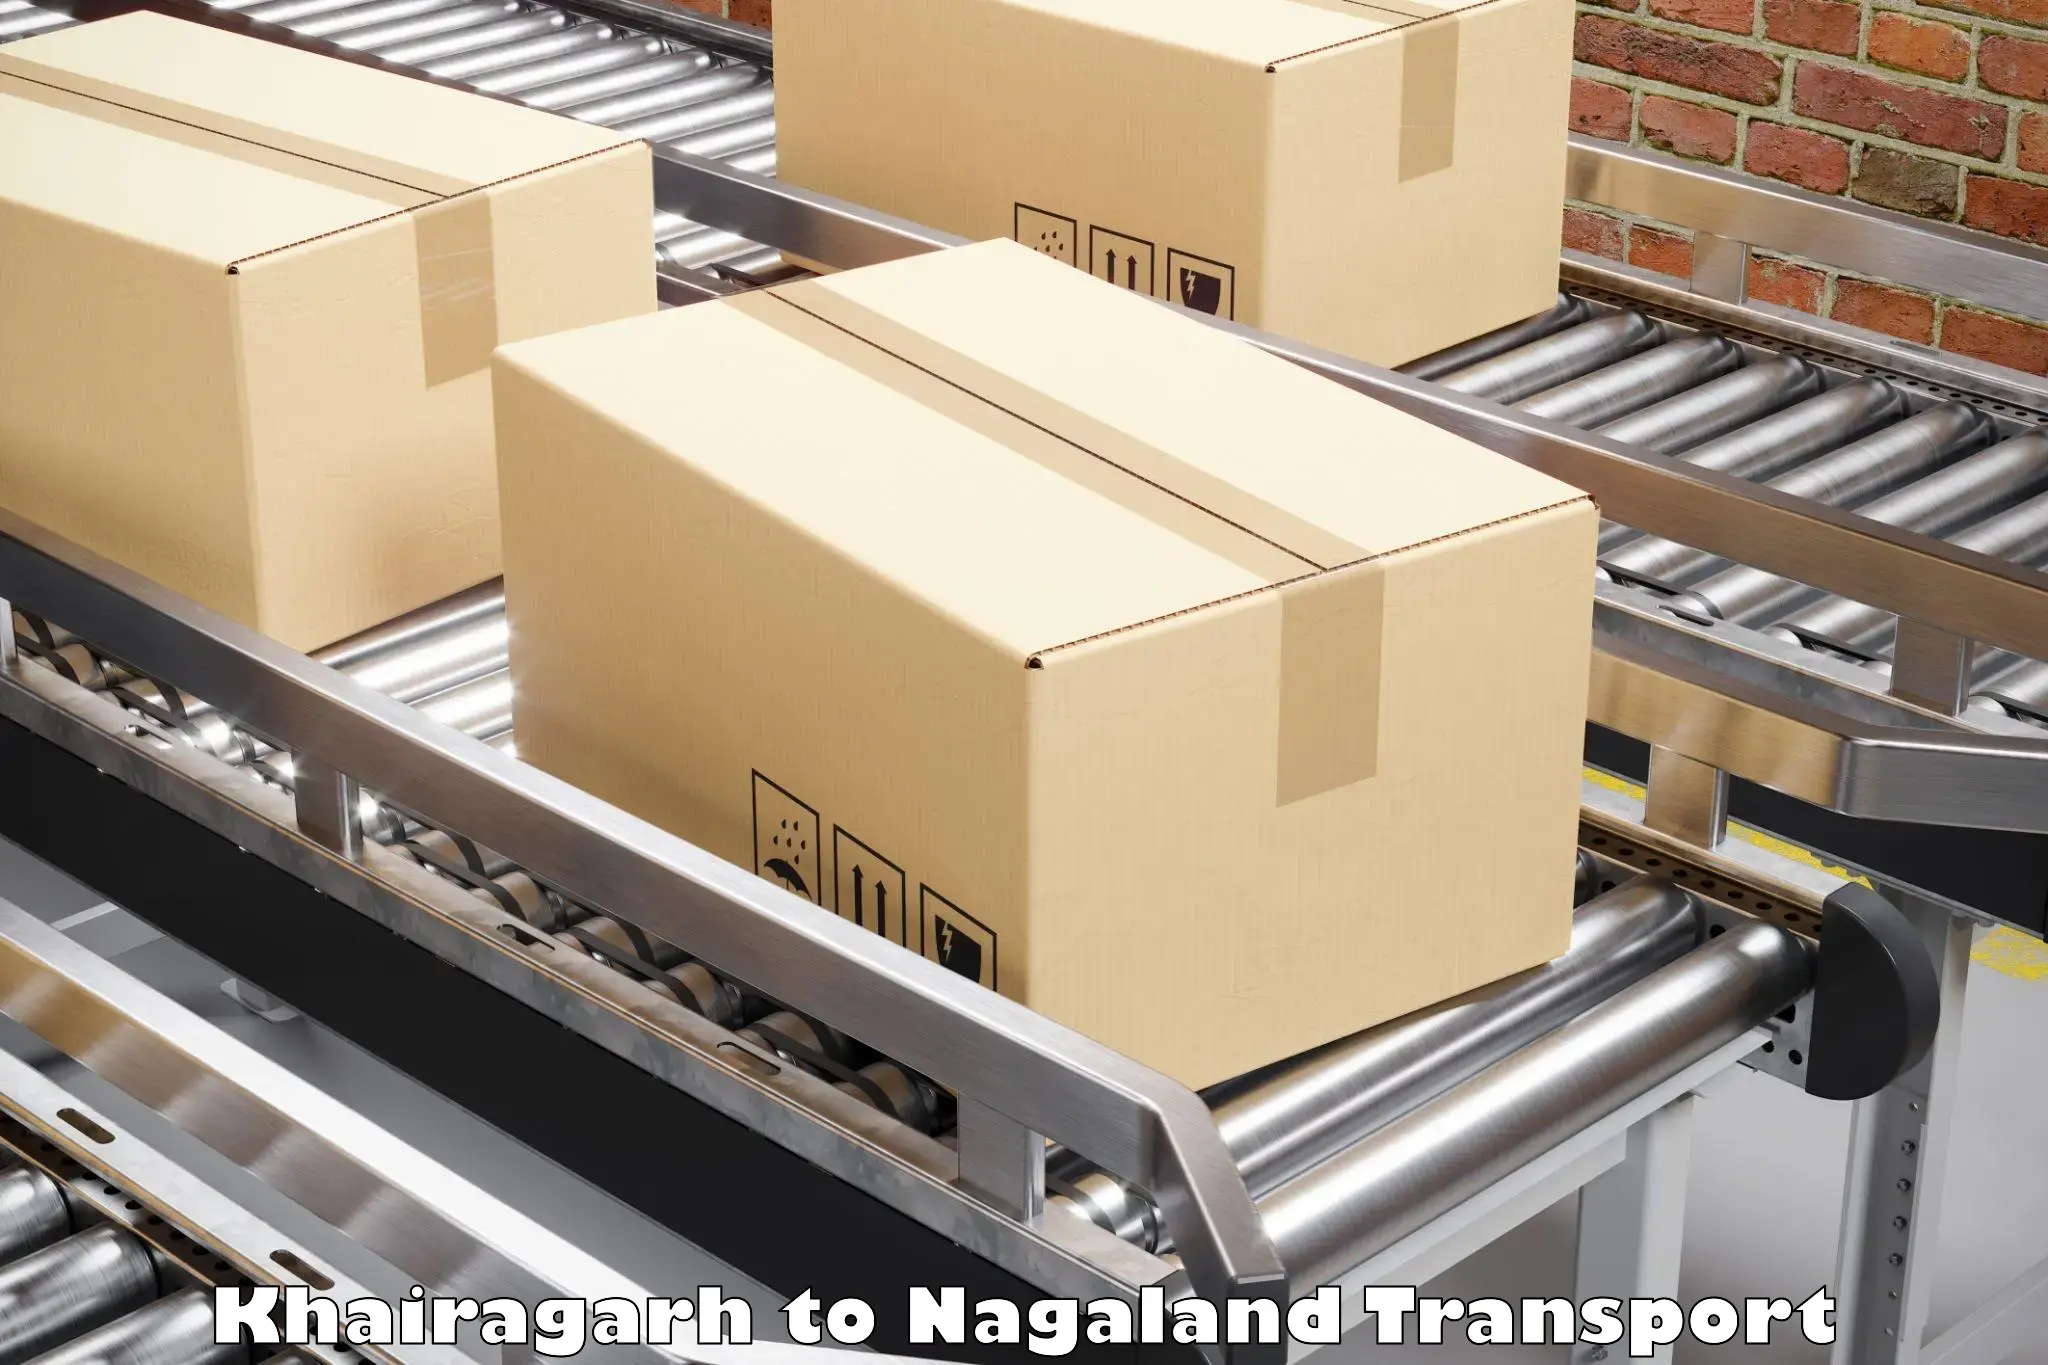 Cargo transportation services Khairagarh to Mon